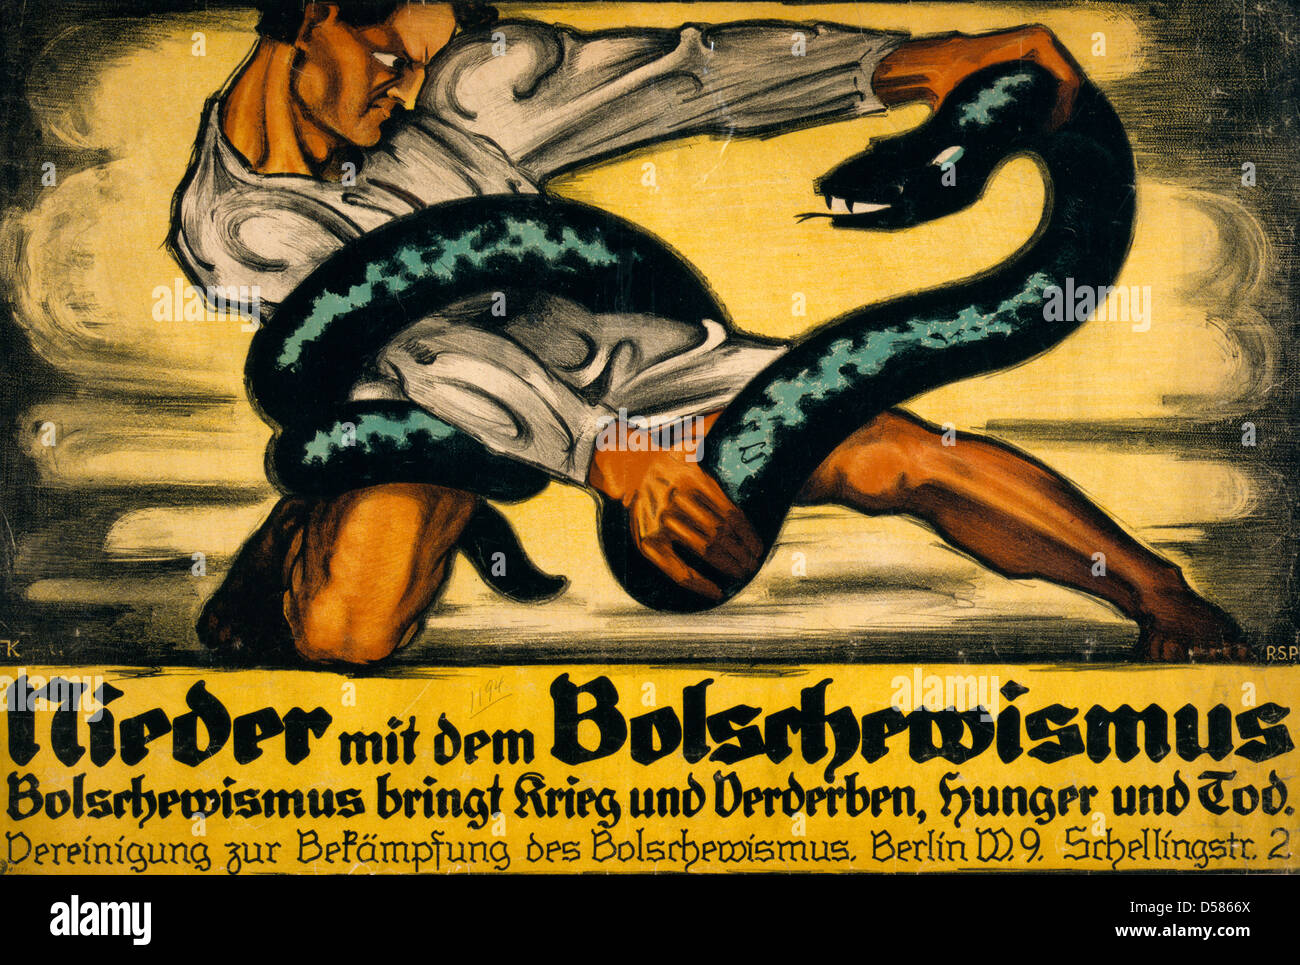 HistoricalFindings Photo Bolschewismus heisst die Welt im Blut ersäufen,World War I,WWI,Germany,Wolf,1919